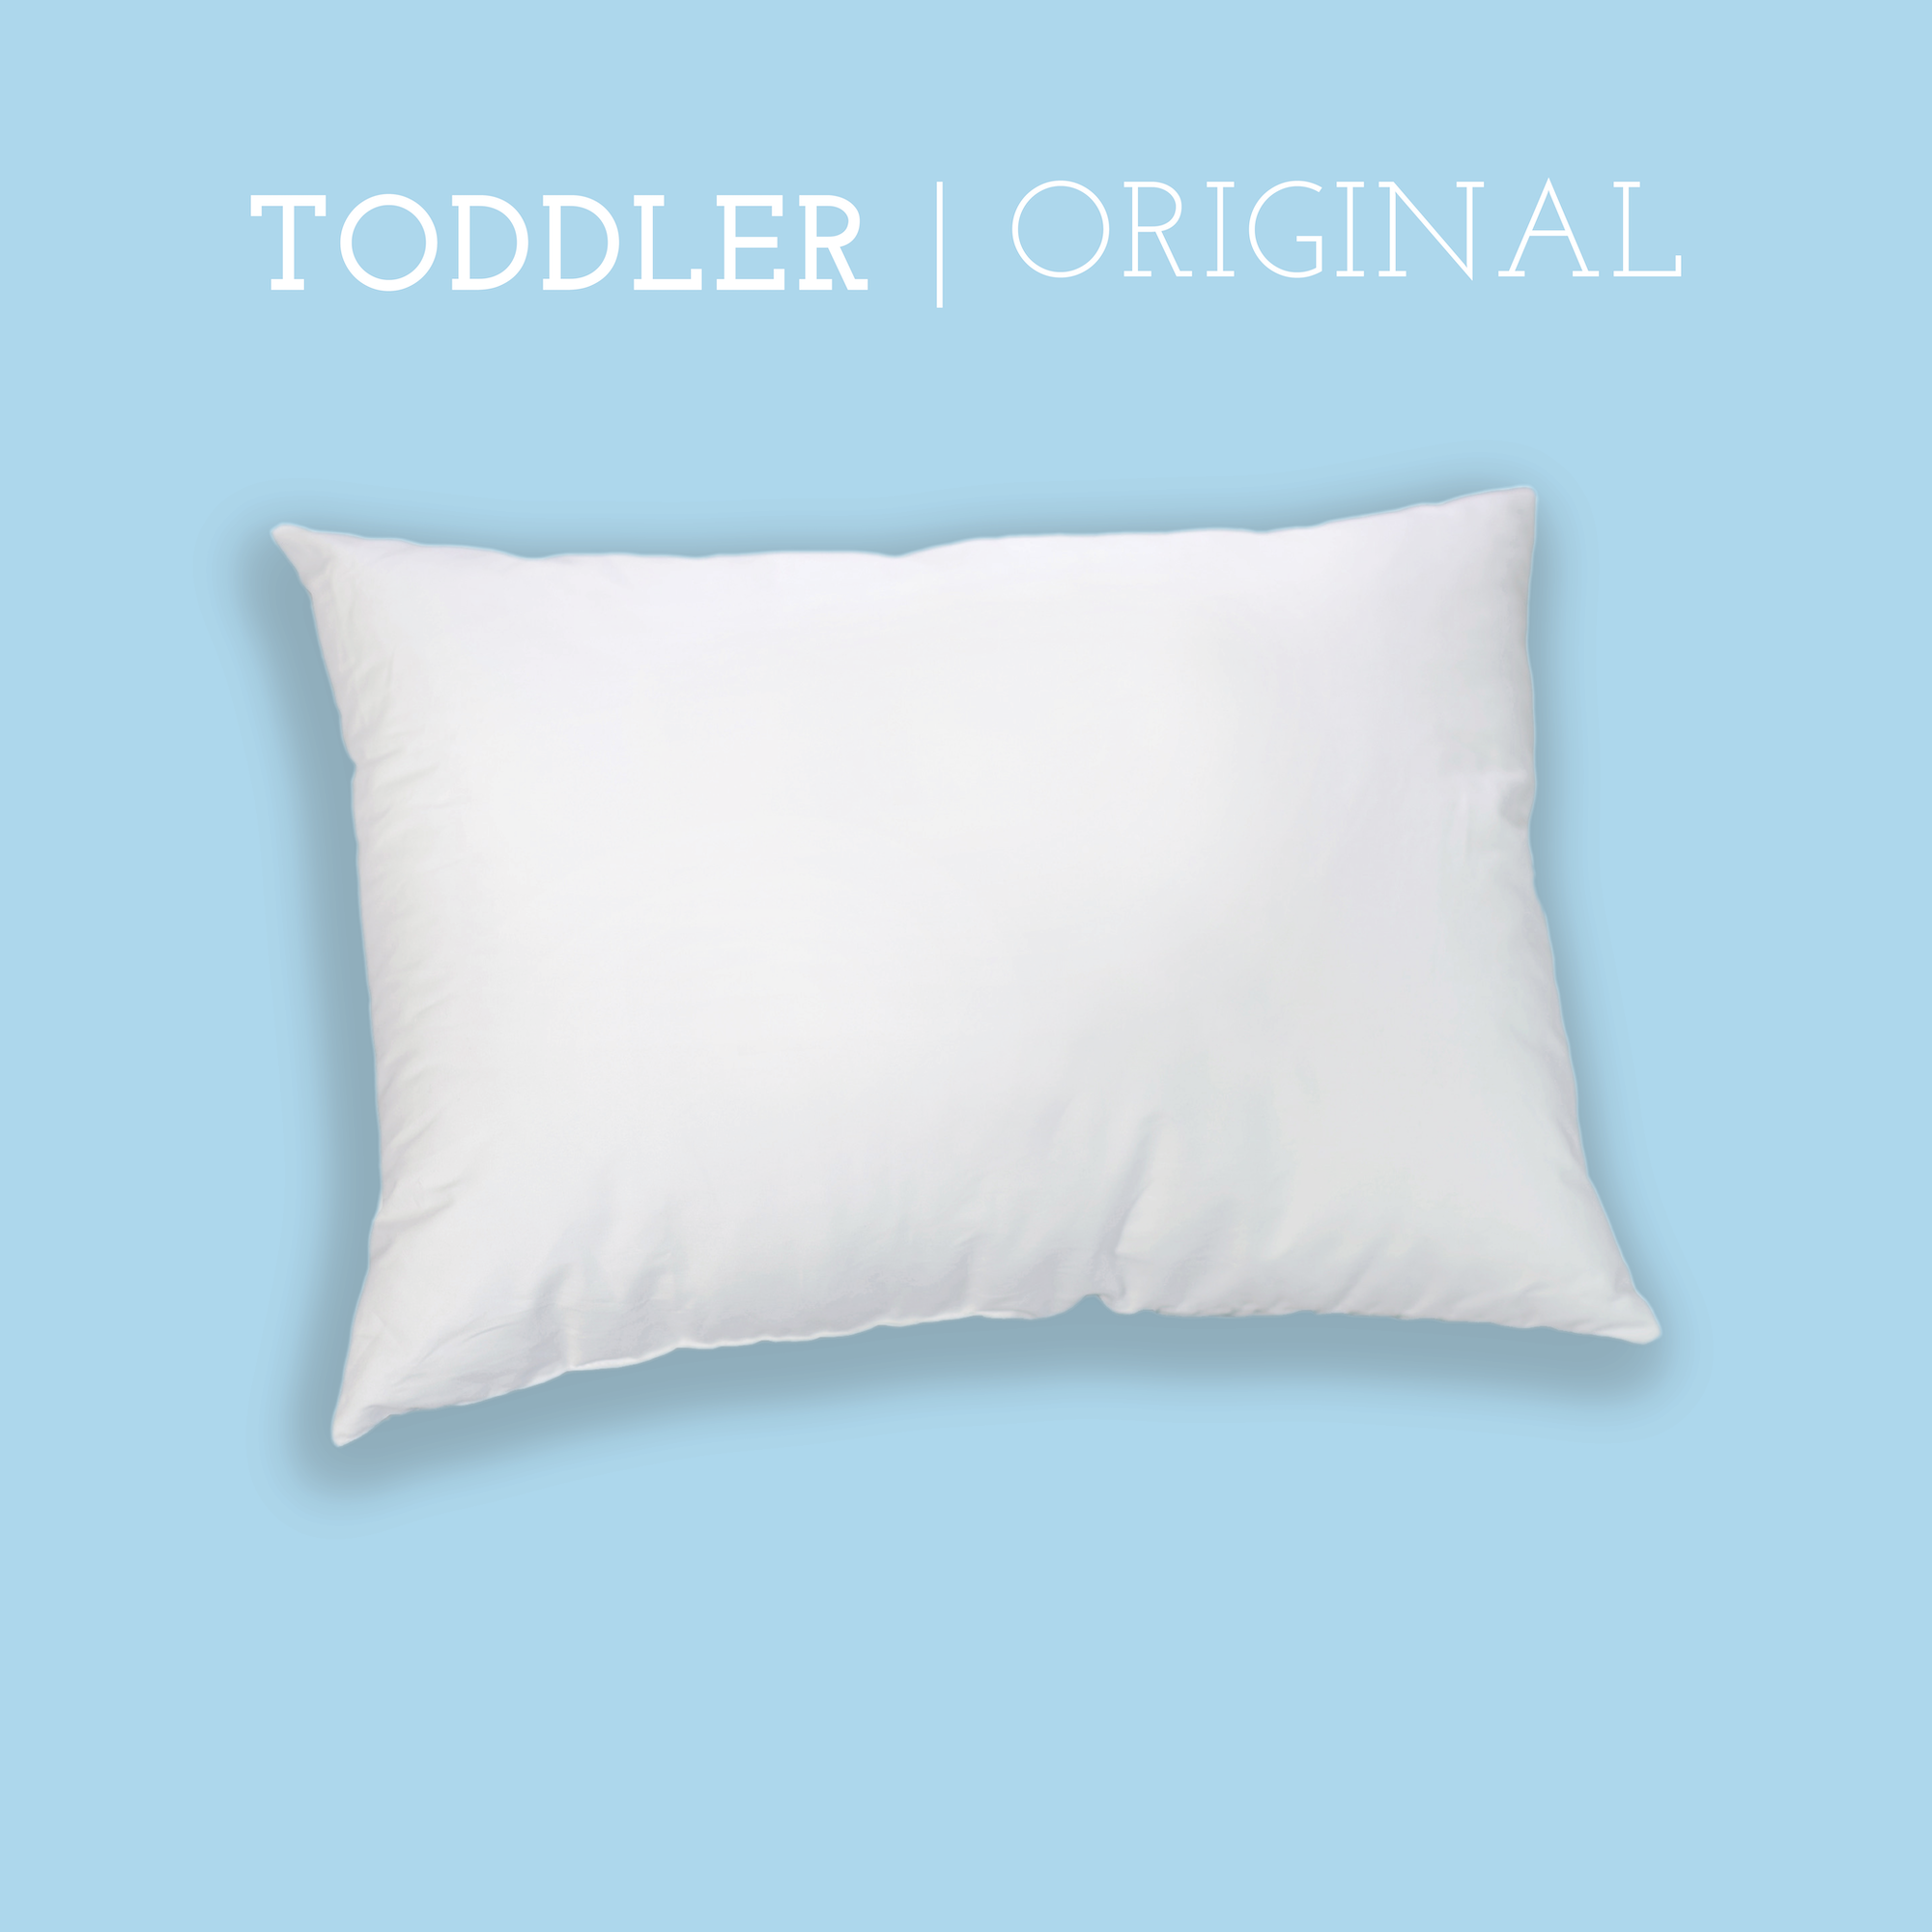 Original Toddler Pillow (13" X 18")